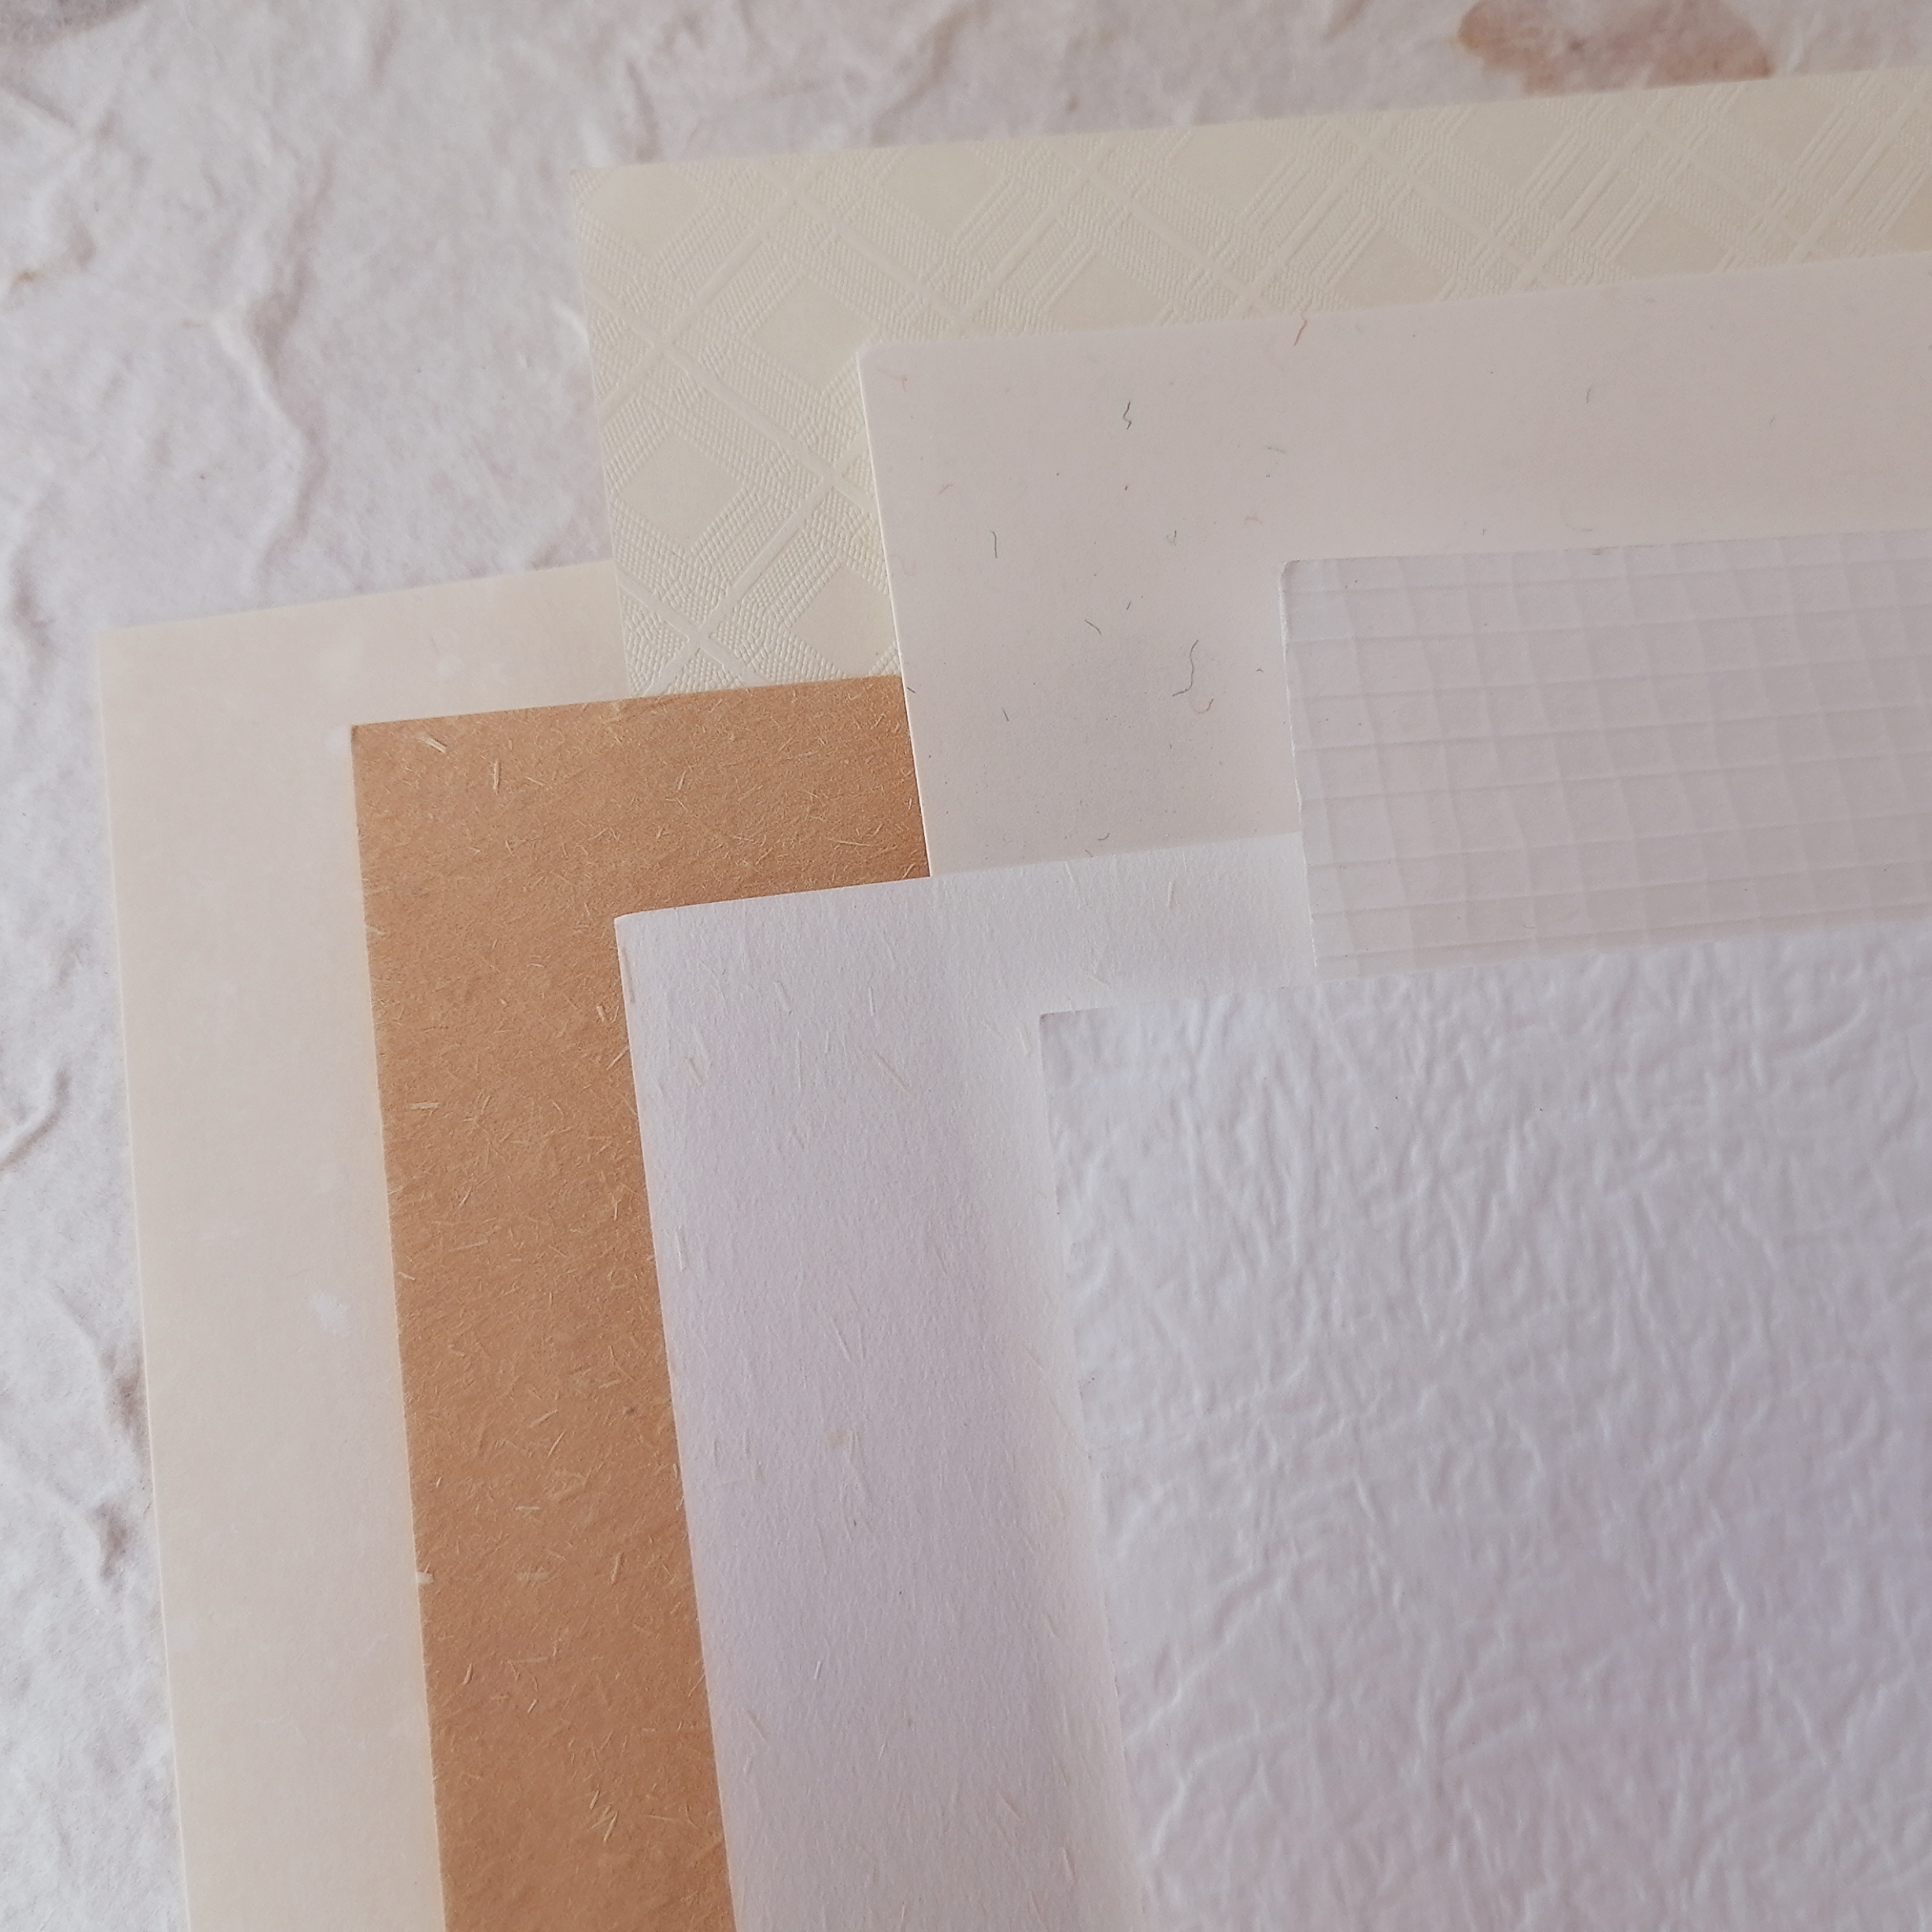 冬日暖阳 纹理特种纸 40款素材 打印手帐拼贴打底A5 A4